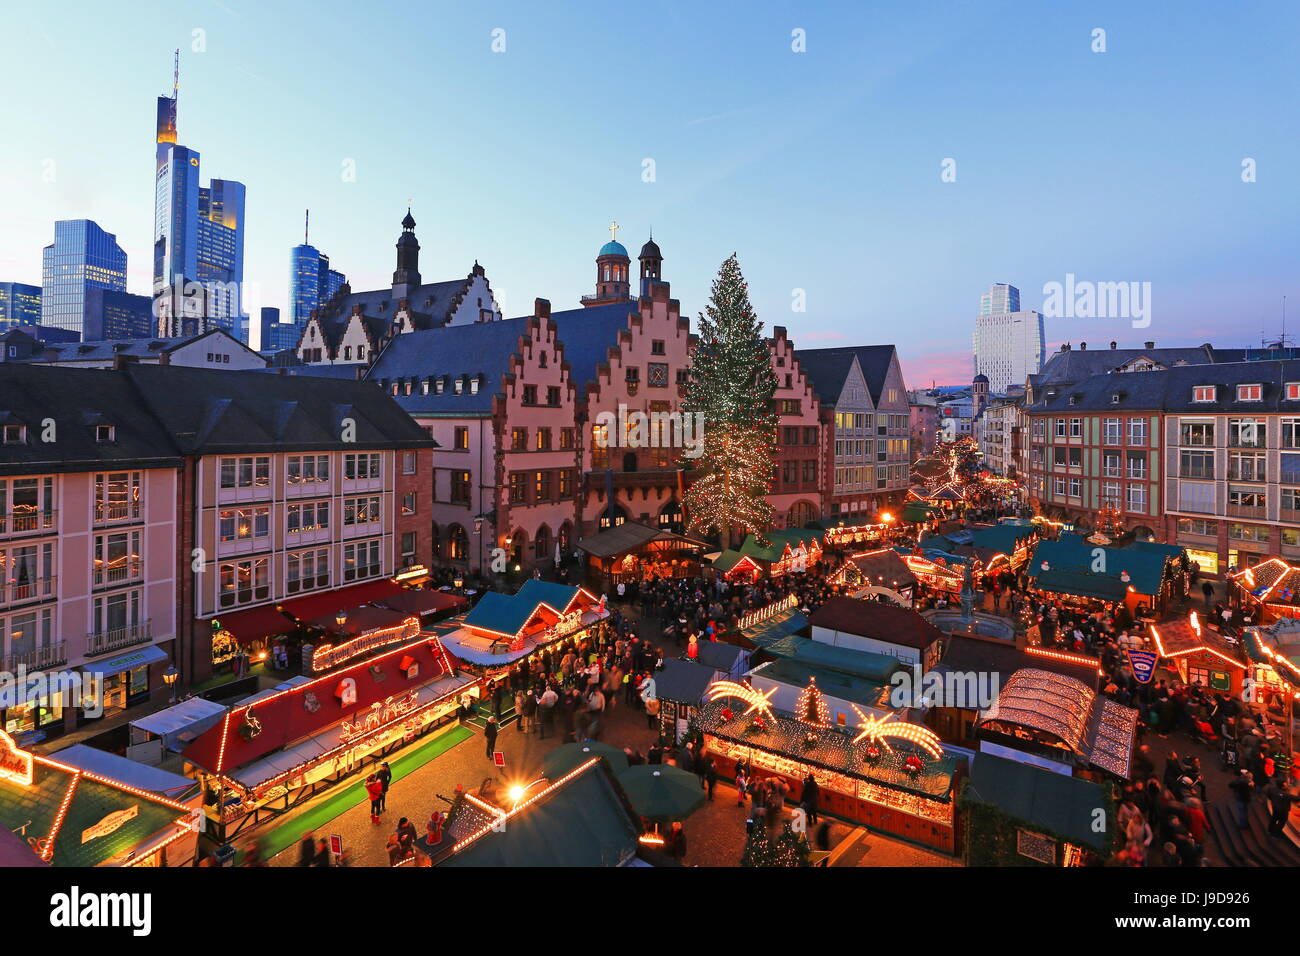 Foire de Noël sur la place Roemerberg, Frankfurt am Main, Hesse, Germany, Europe Banque D'Images